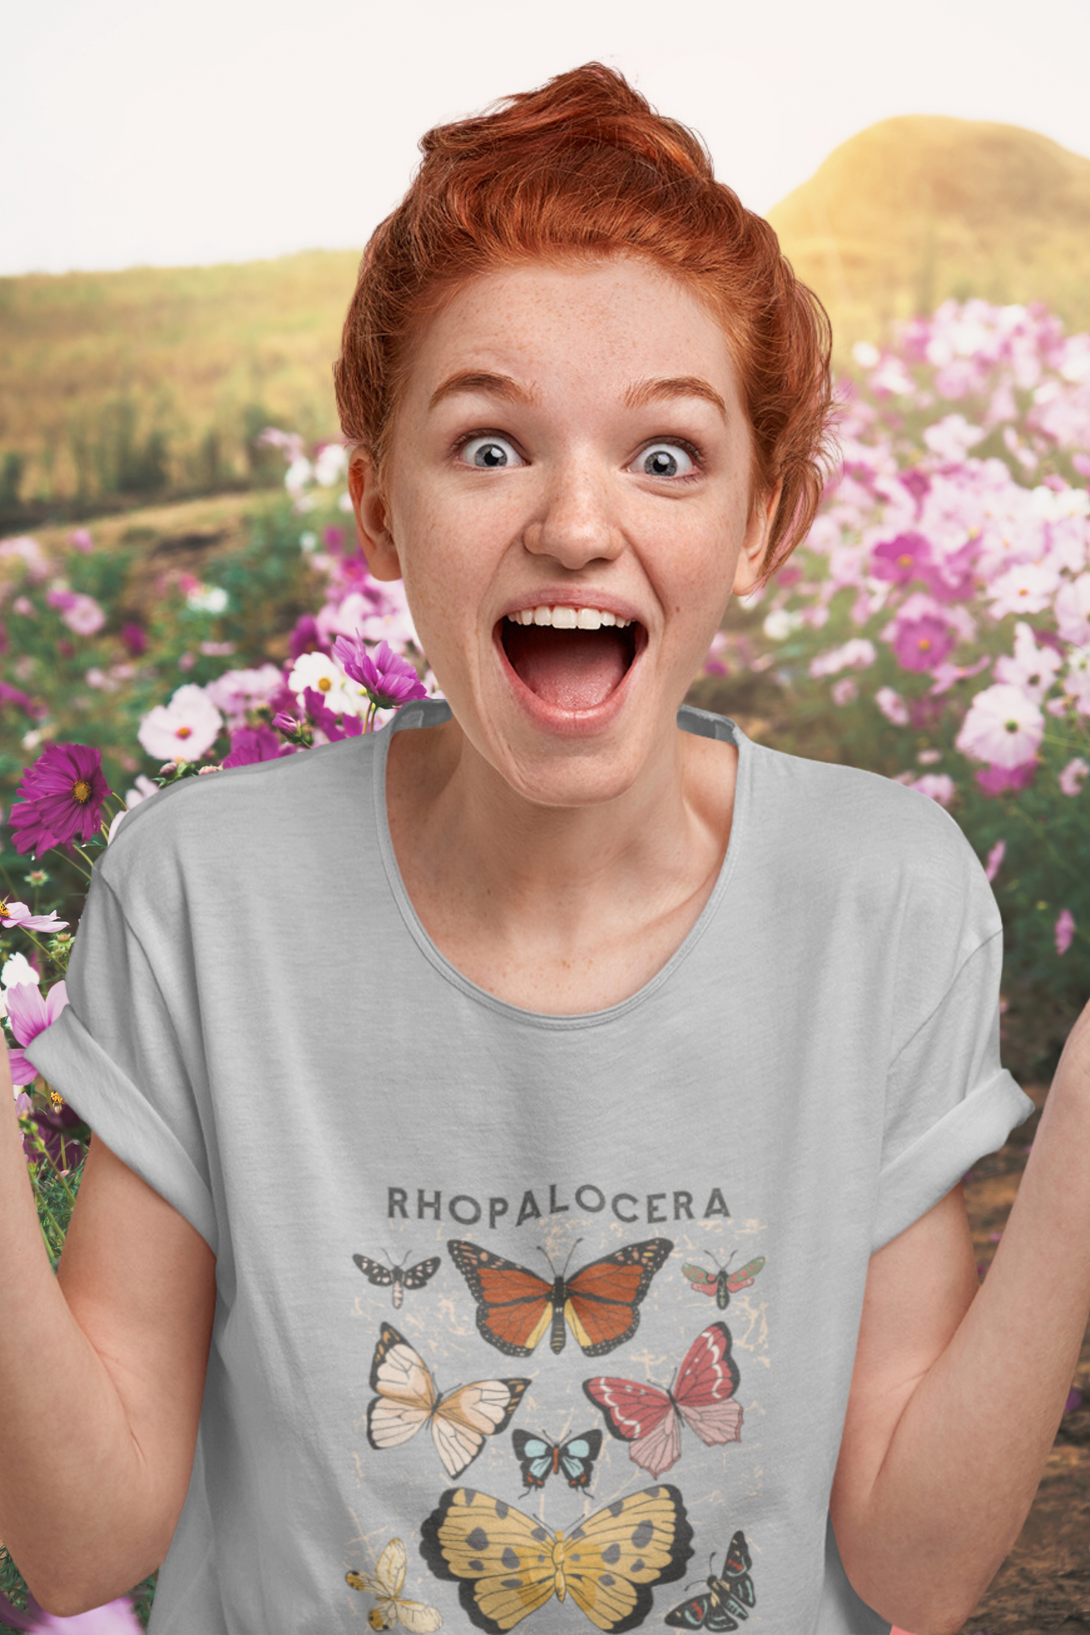 Rhopalocera Printed Scoop Neck T-Shirt For Women - WowWaves - 2